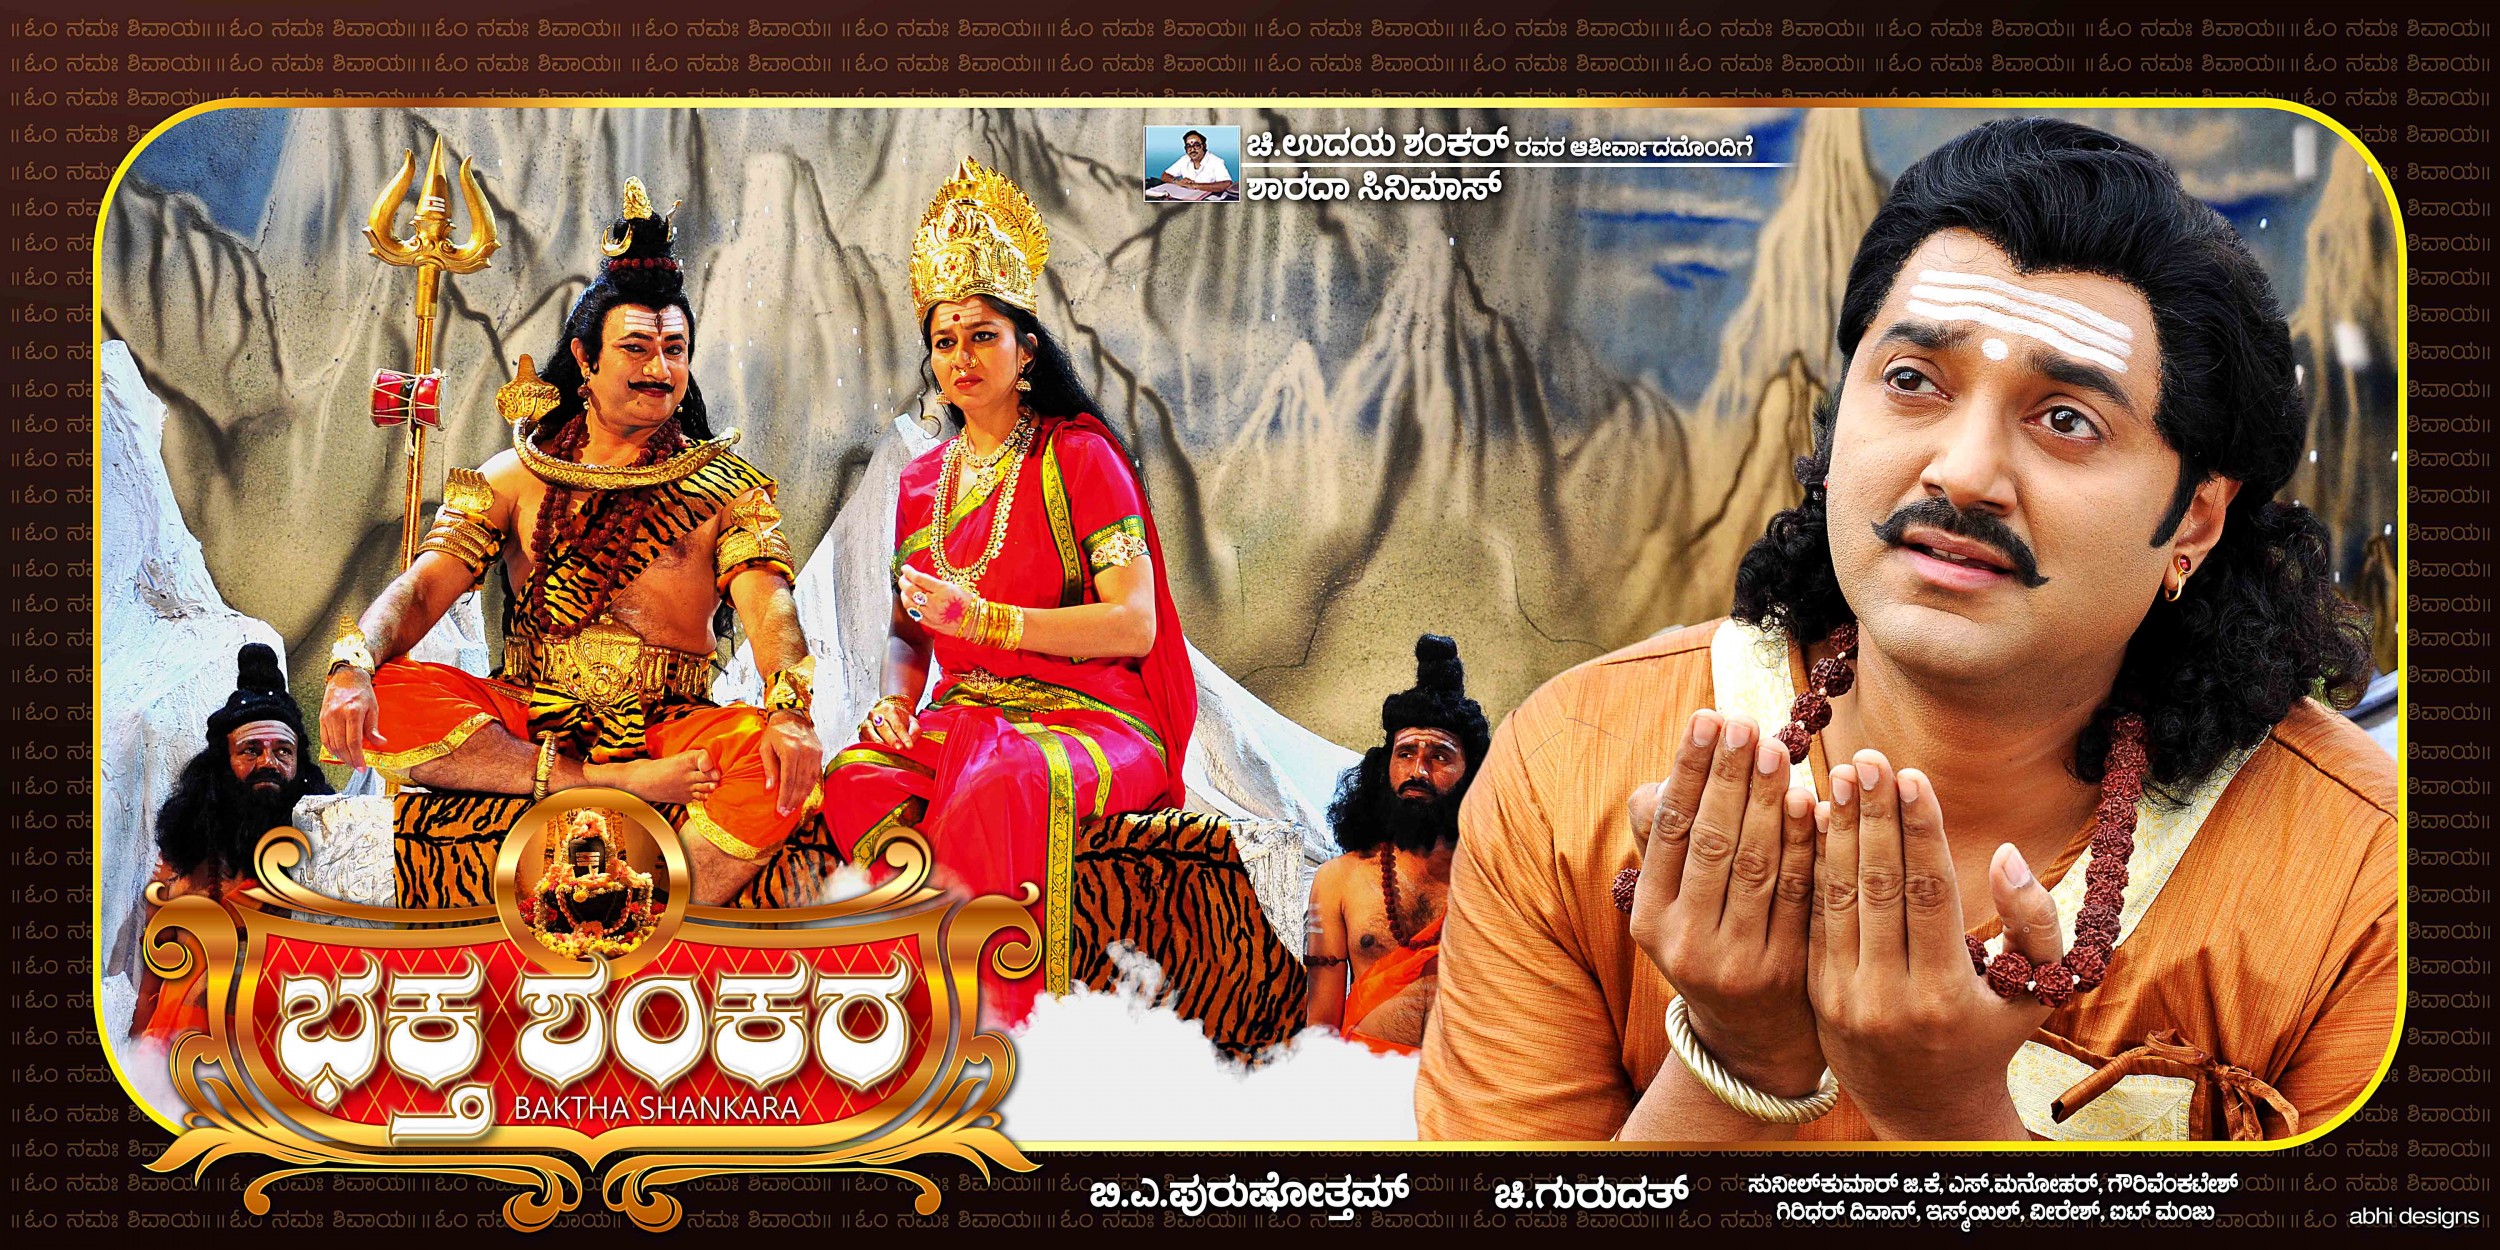 Mega Sized Movie Poster Image for Baktha Shankara (#2 of 10)